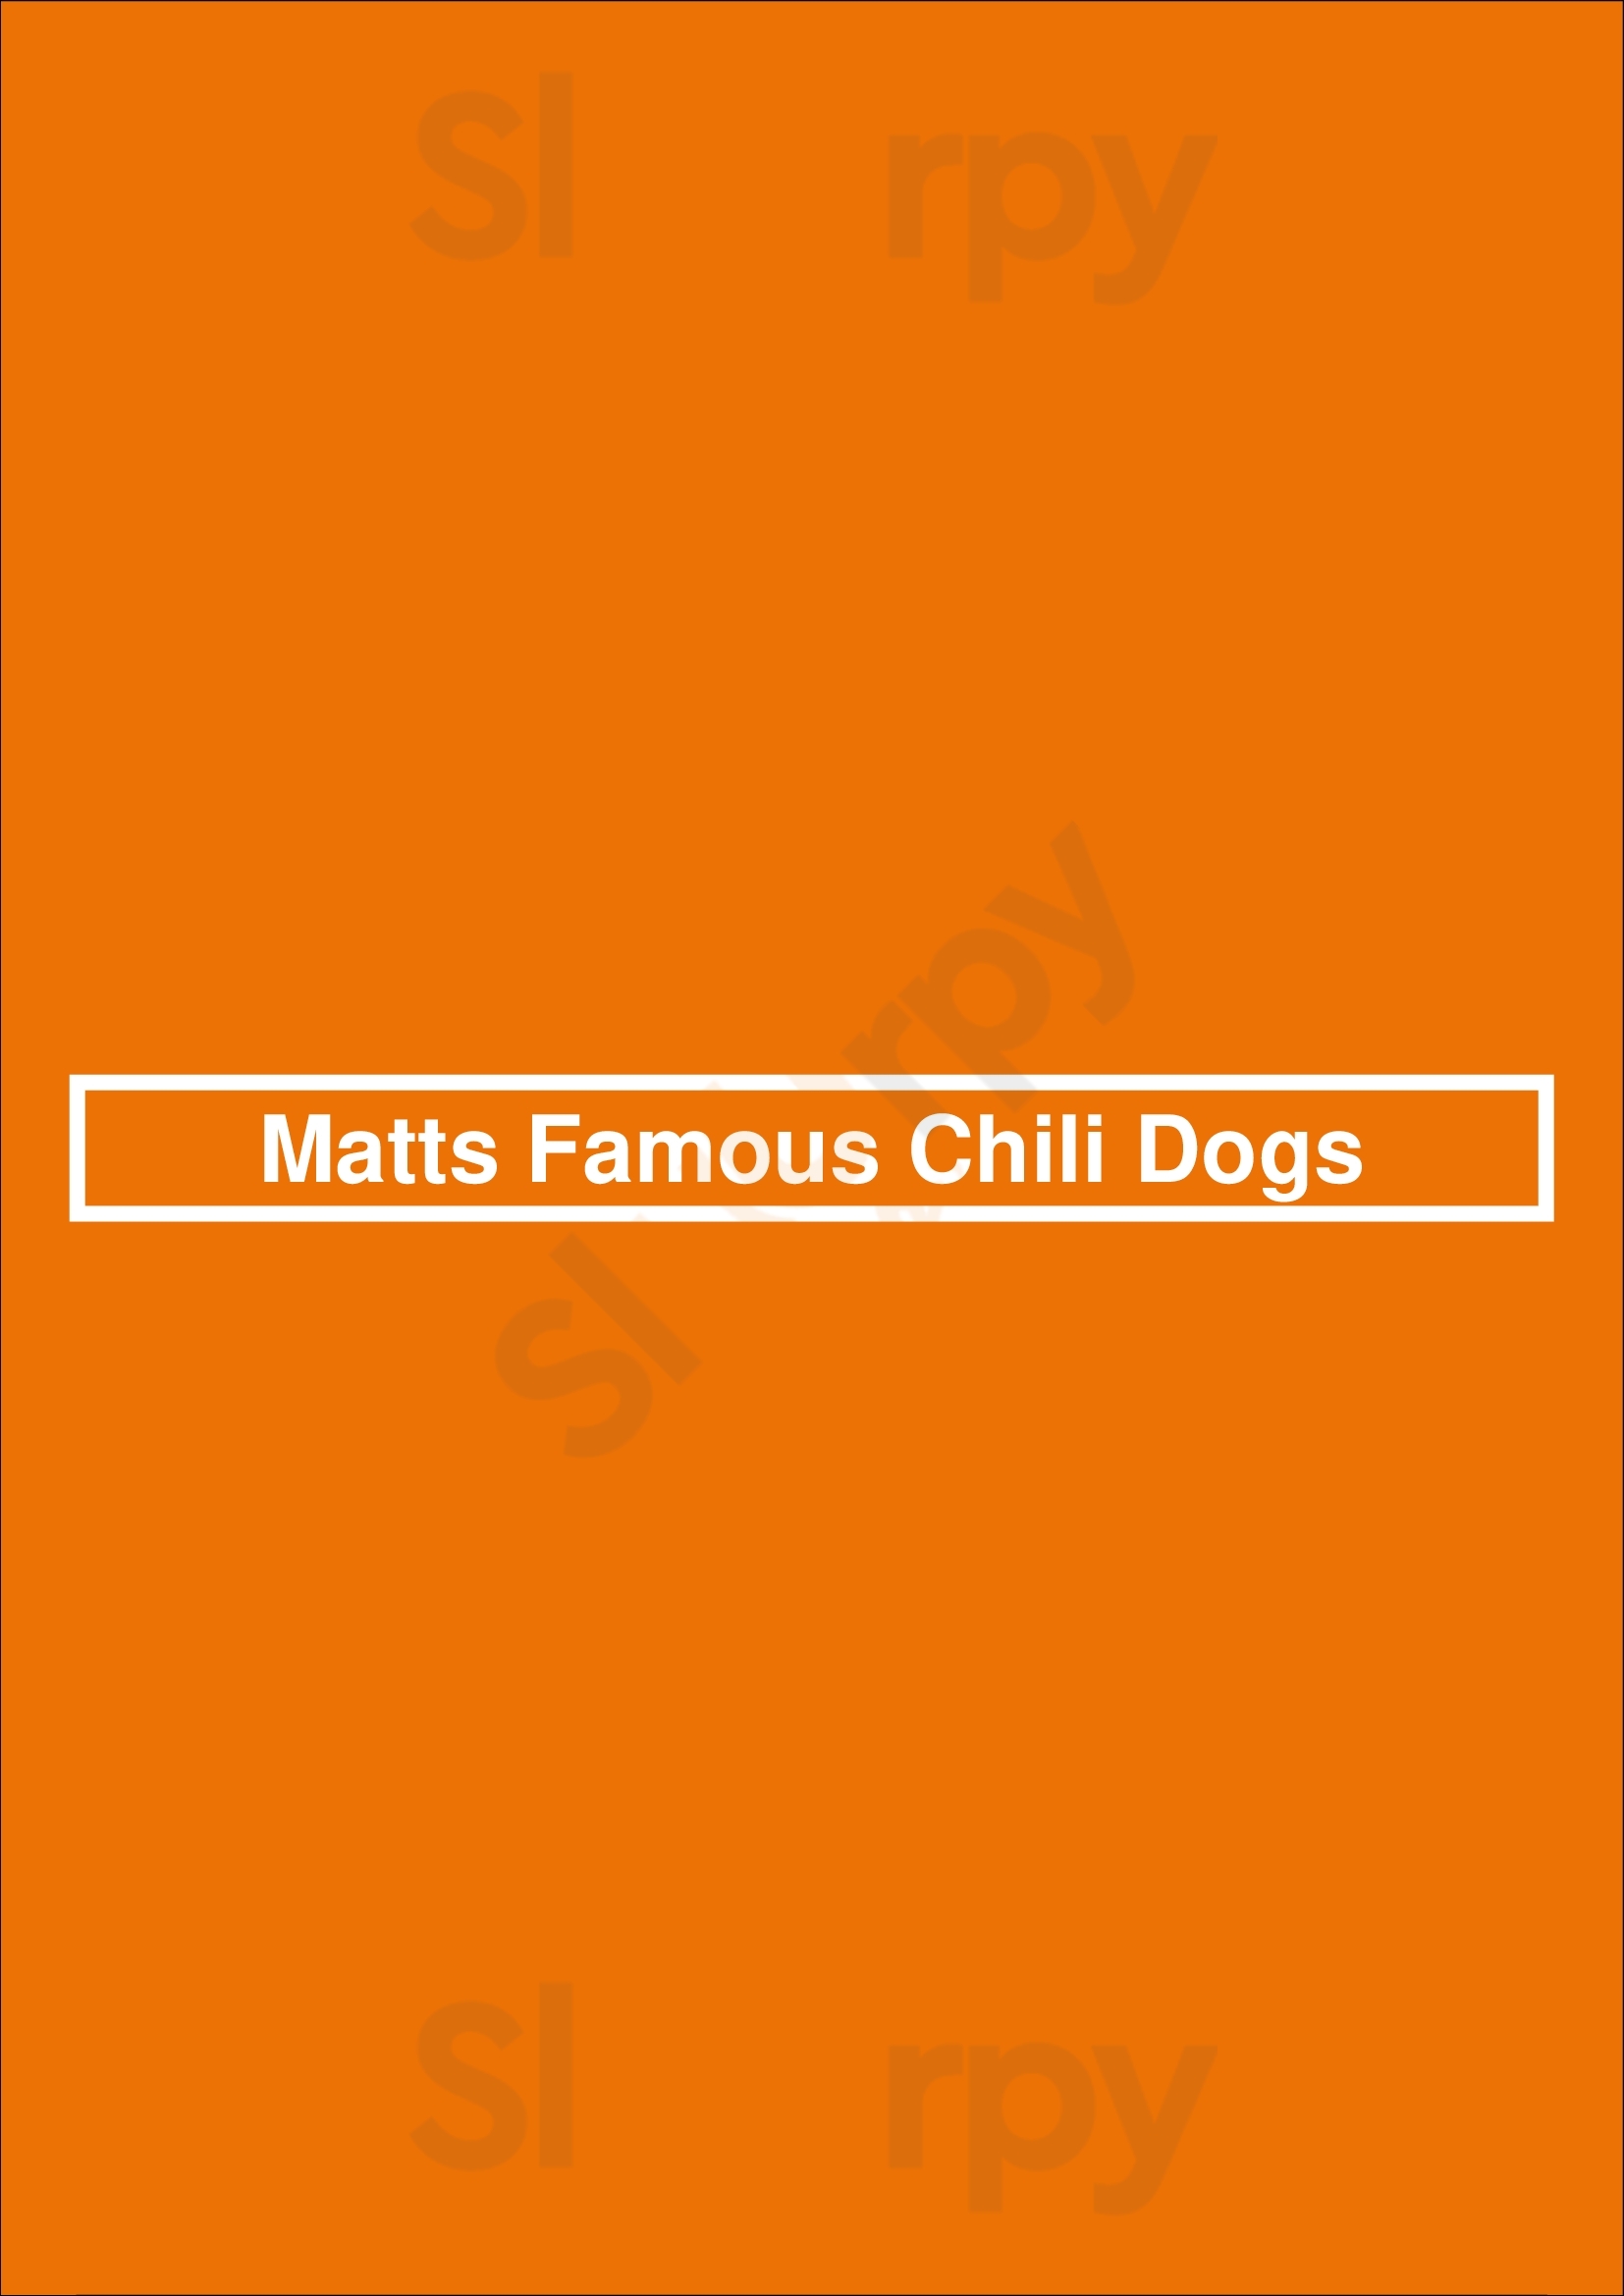 Matts Famous Chili Dogs Seattle Menu - 1